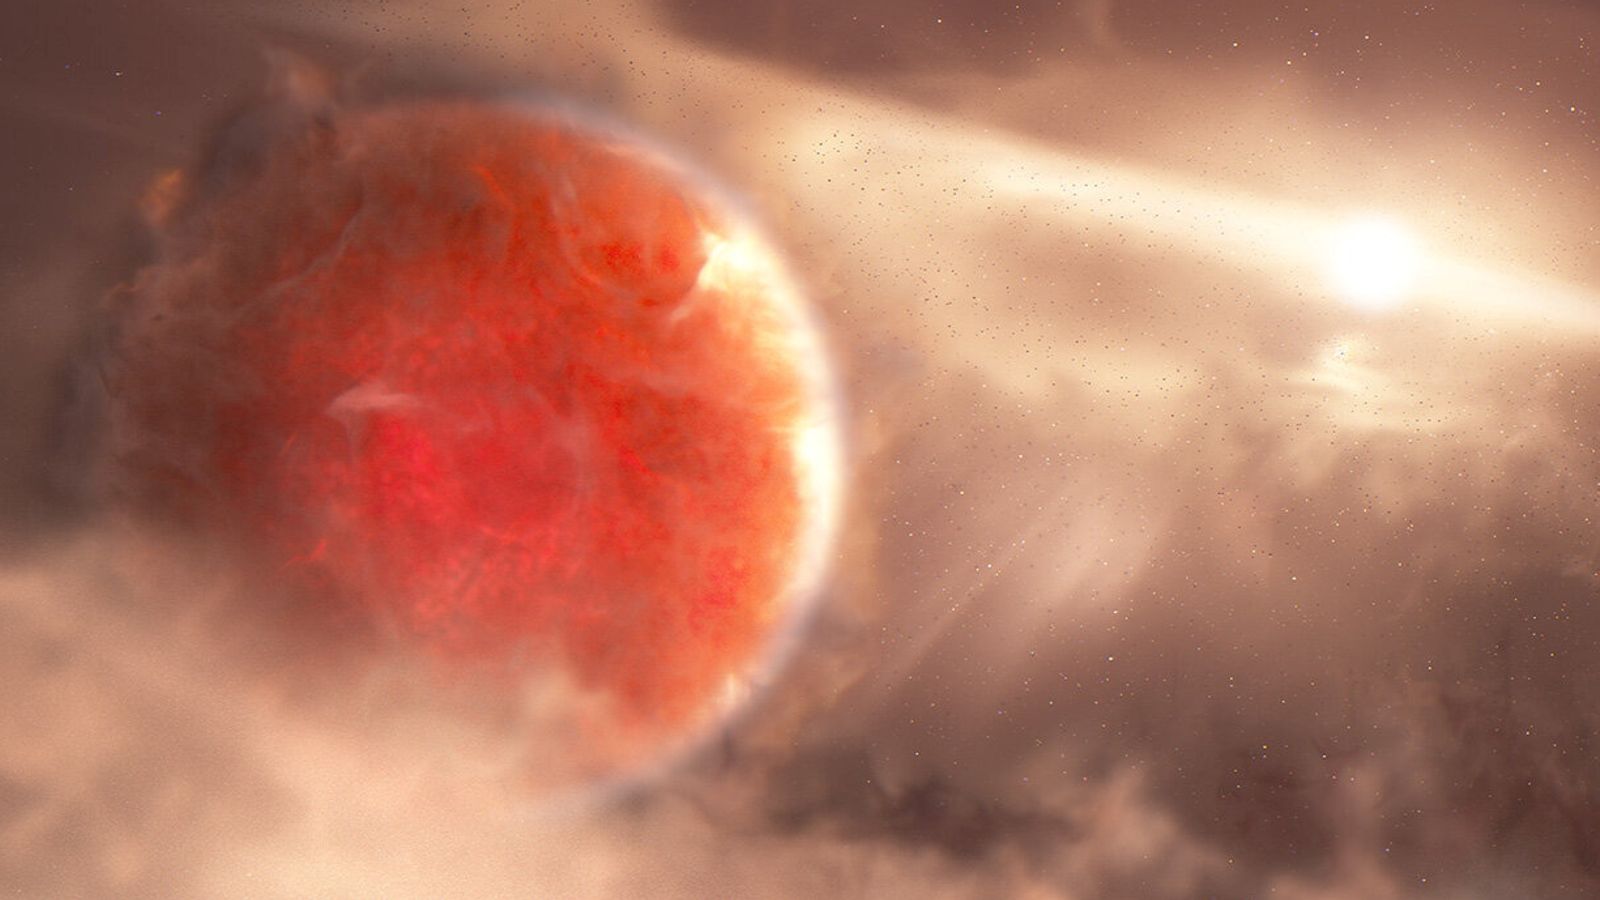 WASP-193b: كوكب كاندي فلوس “رقيق للغاية” أكبر من كوكب المشتري اكتشفه علماء الفلك |  أخبار العلوم والتكنولوجيا